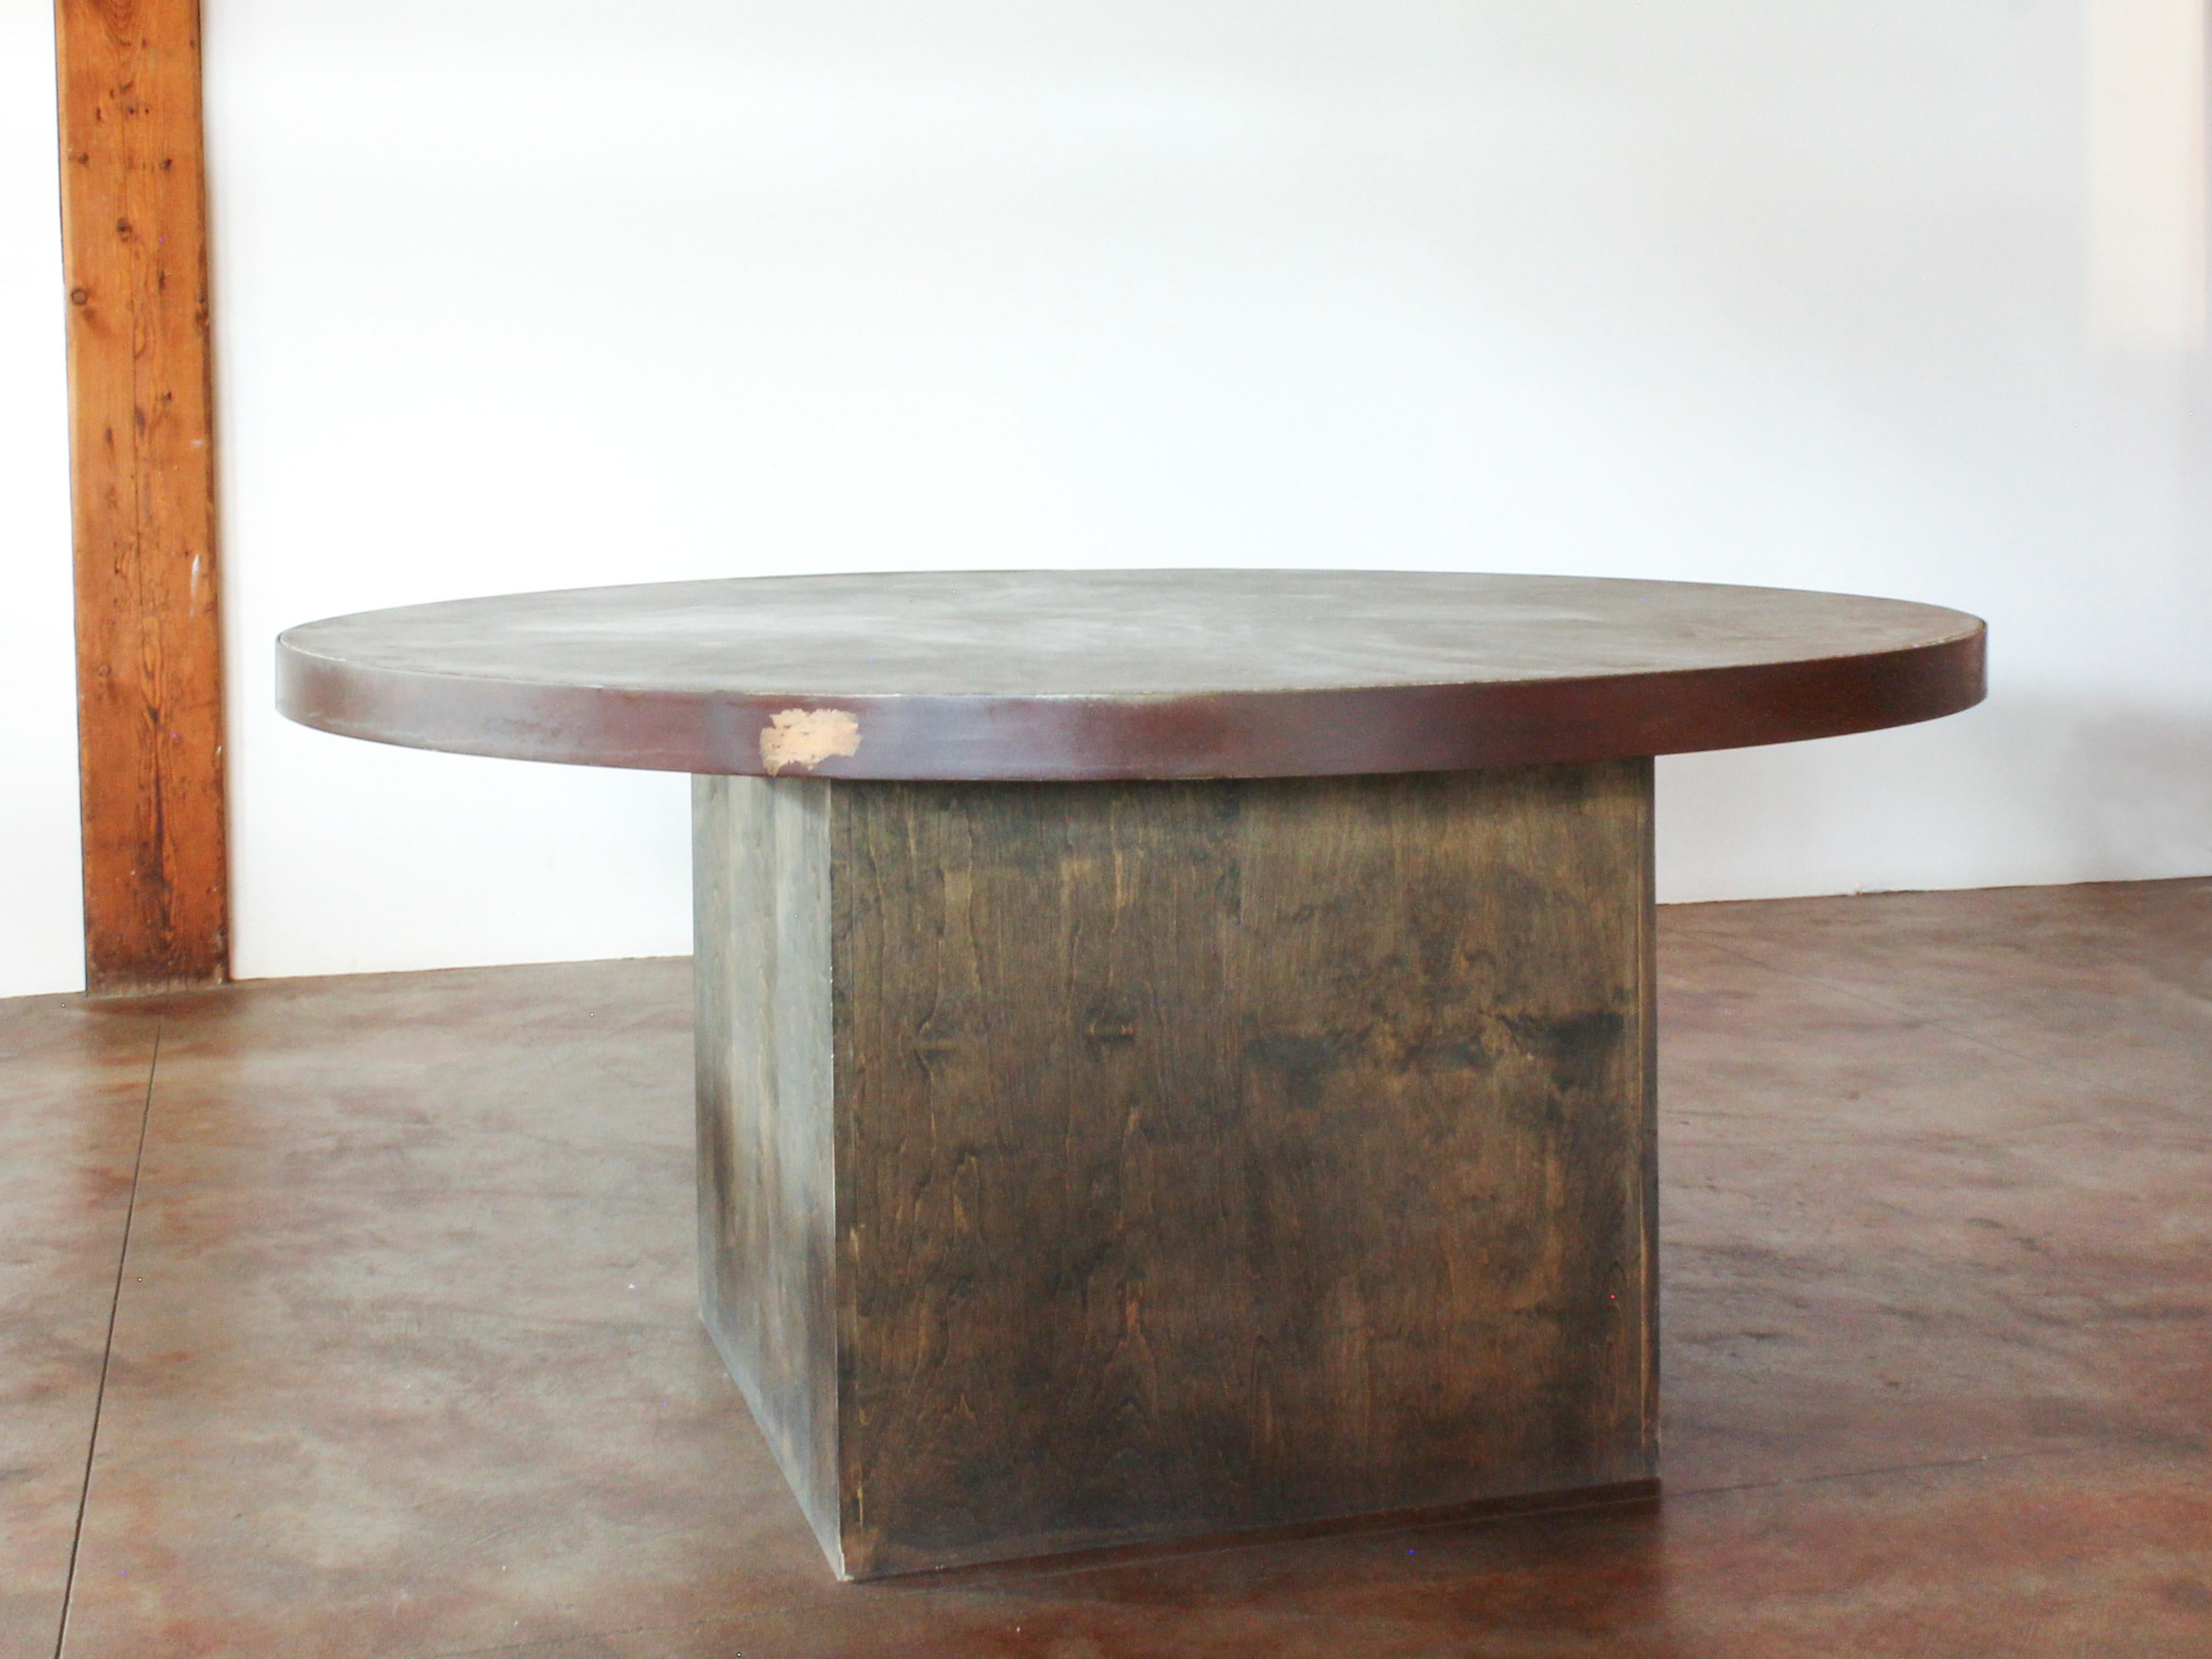 Table de salle à manger à piédestal rond avec un plateau en béton personnalisé avec des bandes d'acier, sur une base en bois teint à l'aniline gris. Belle patine. Très lourd.